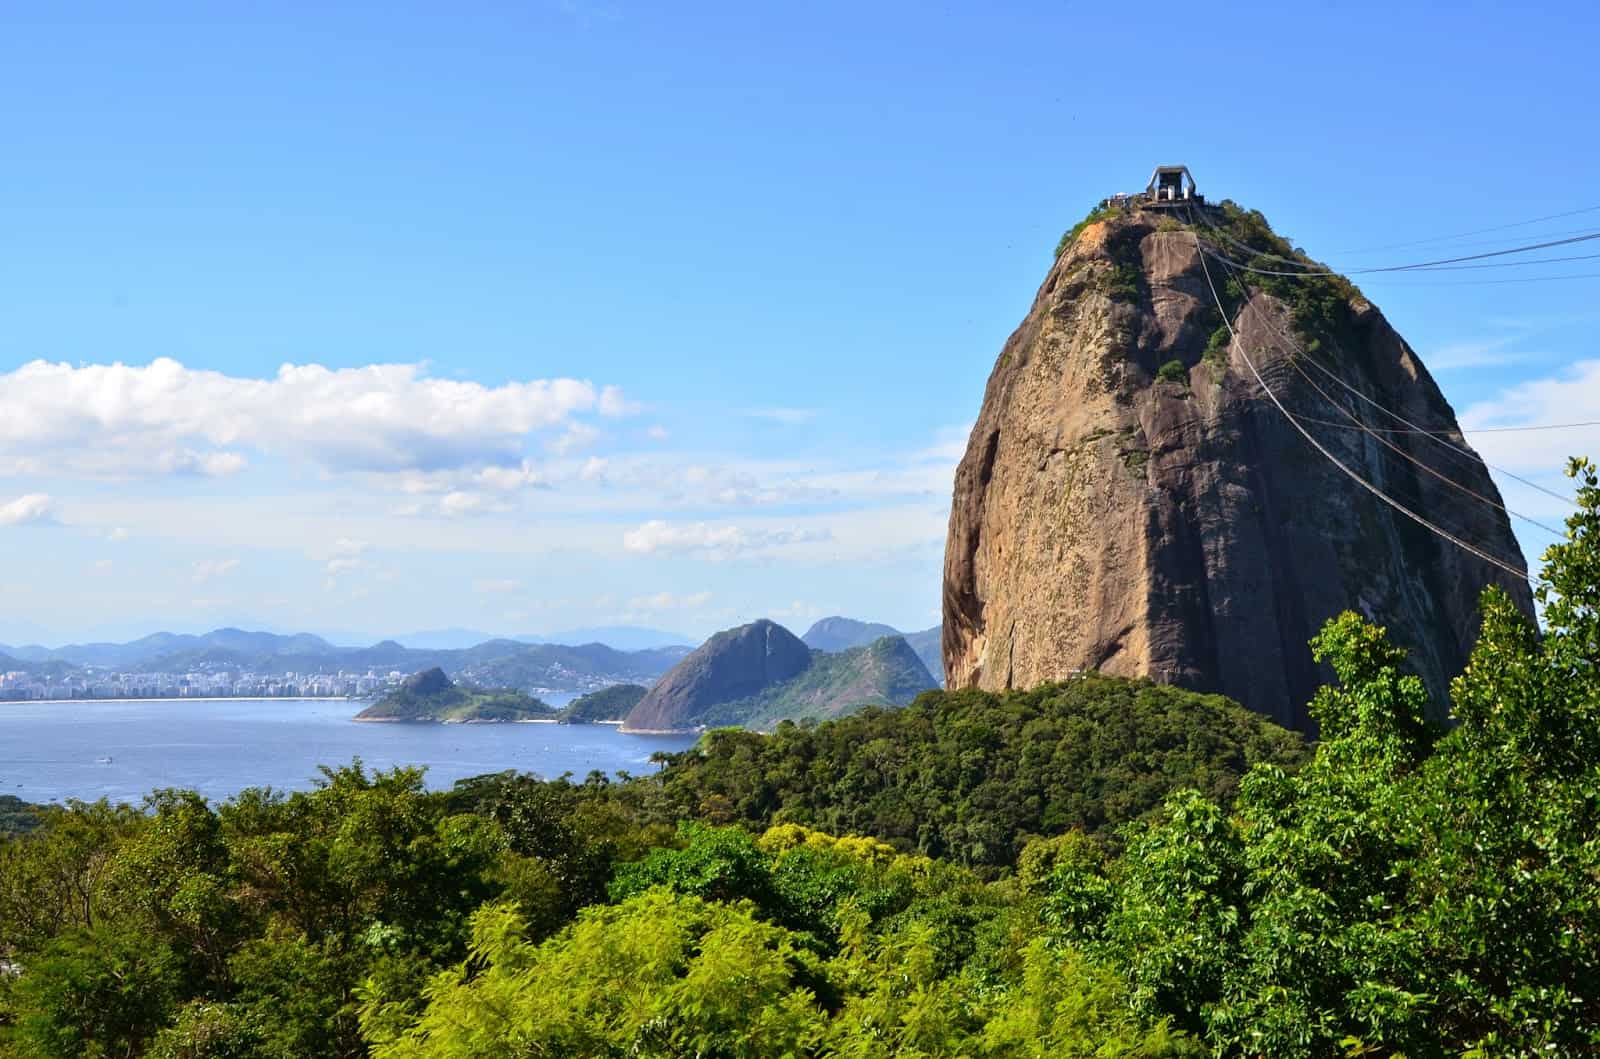 Sugar Loaf - Urca Free Tour - Rio de Janeiro